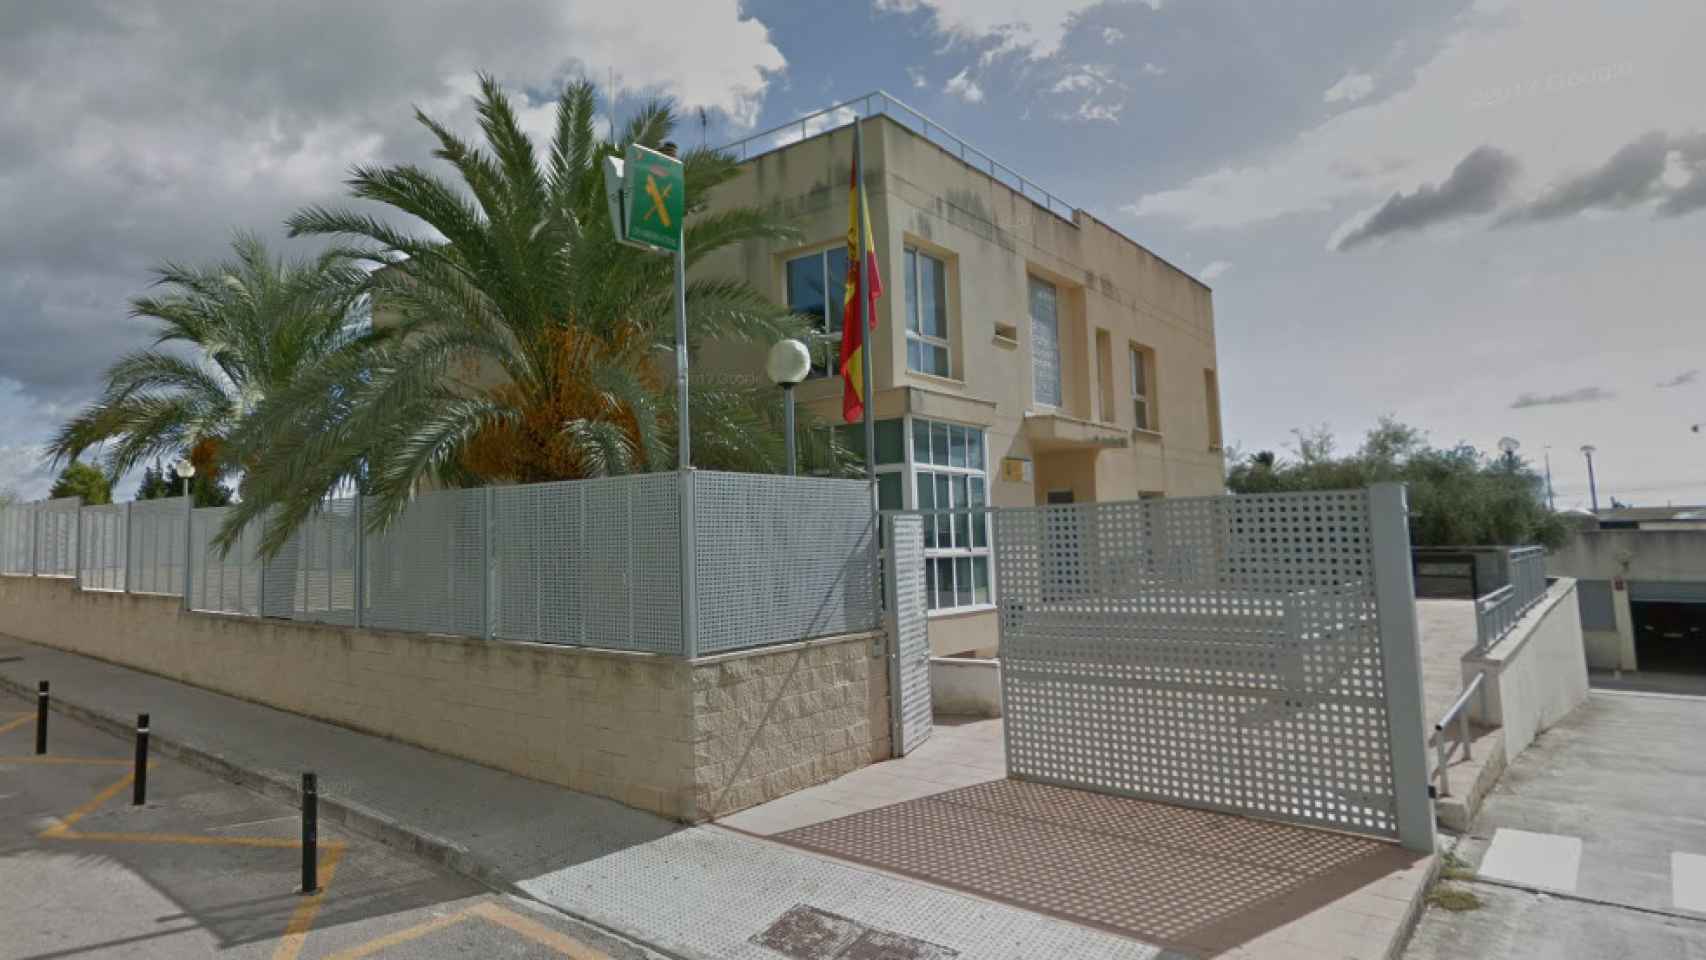 El episodio tuvo lugar en el cuartel de la Guardia Civil en Inca (Mallorca).